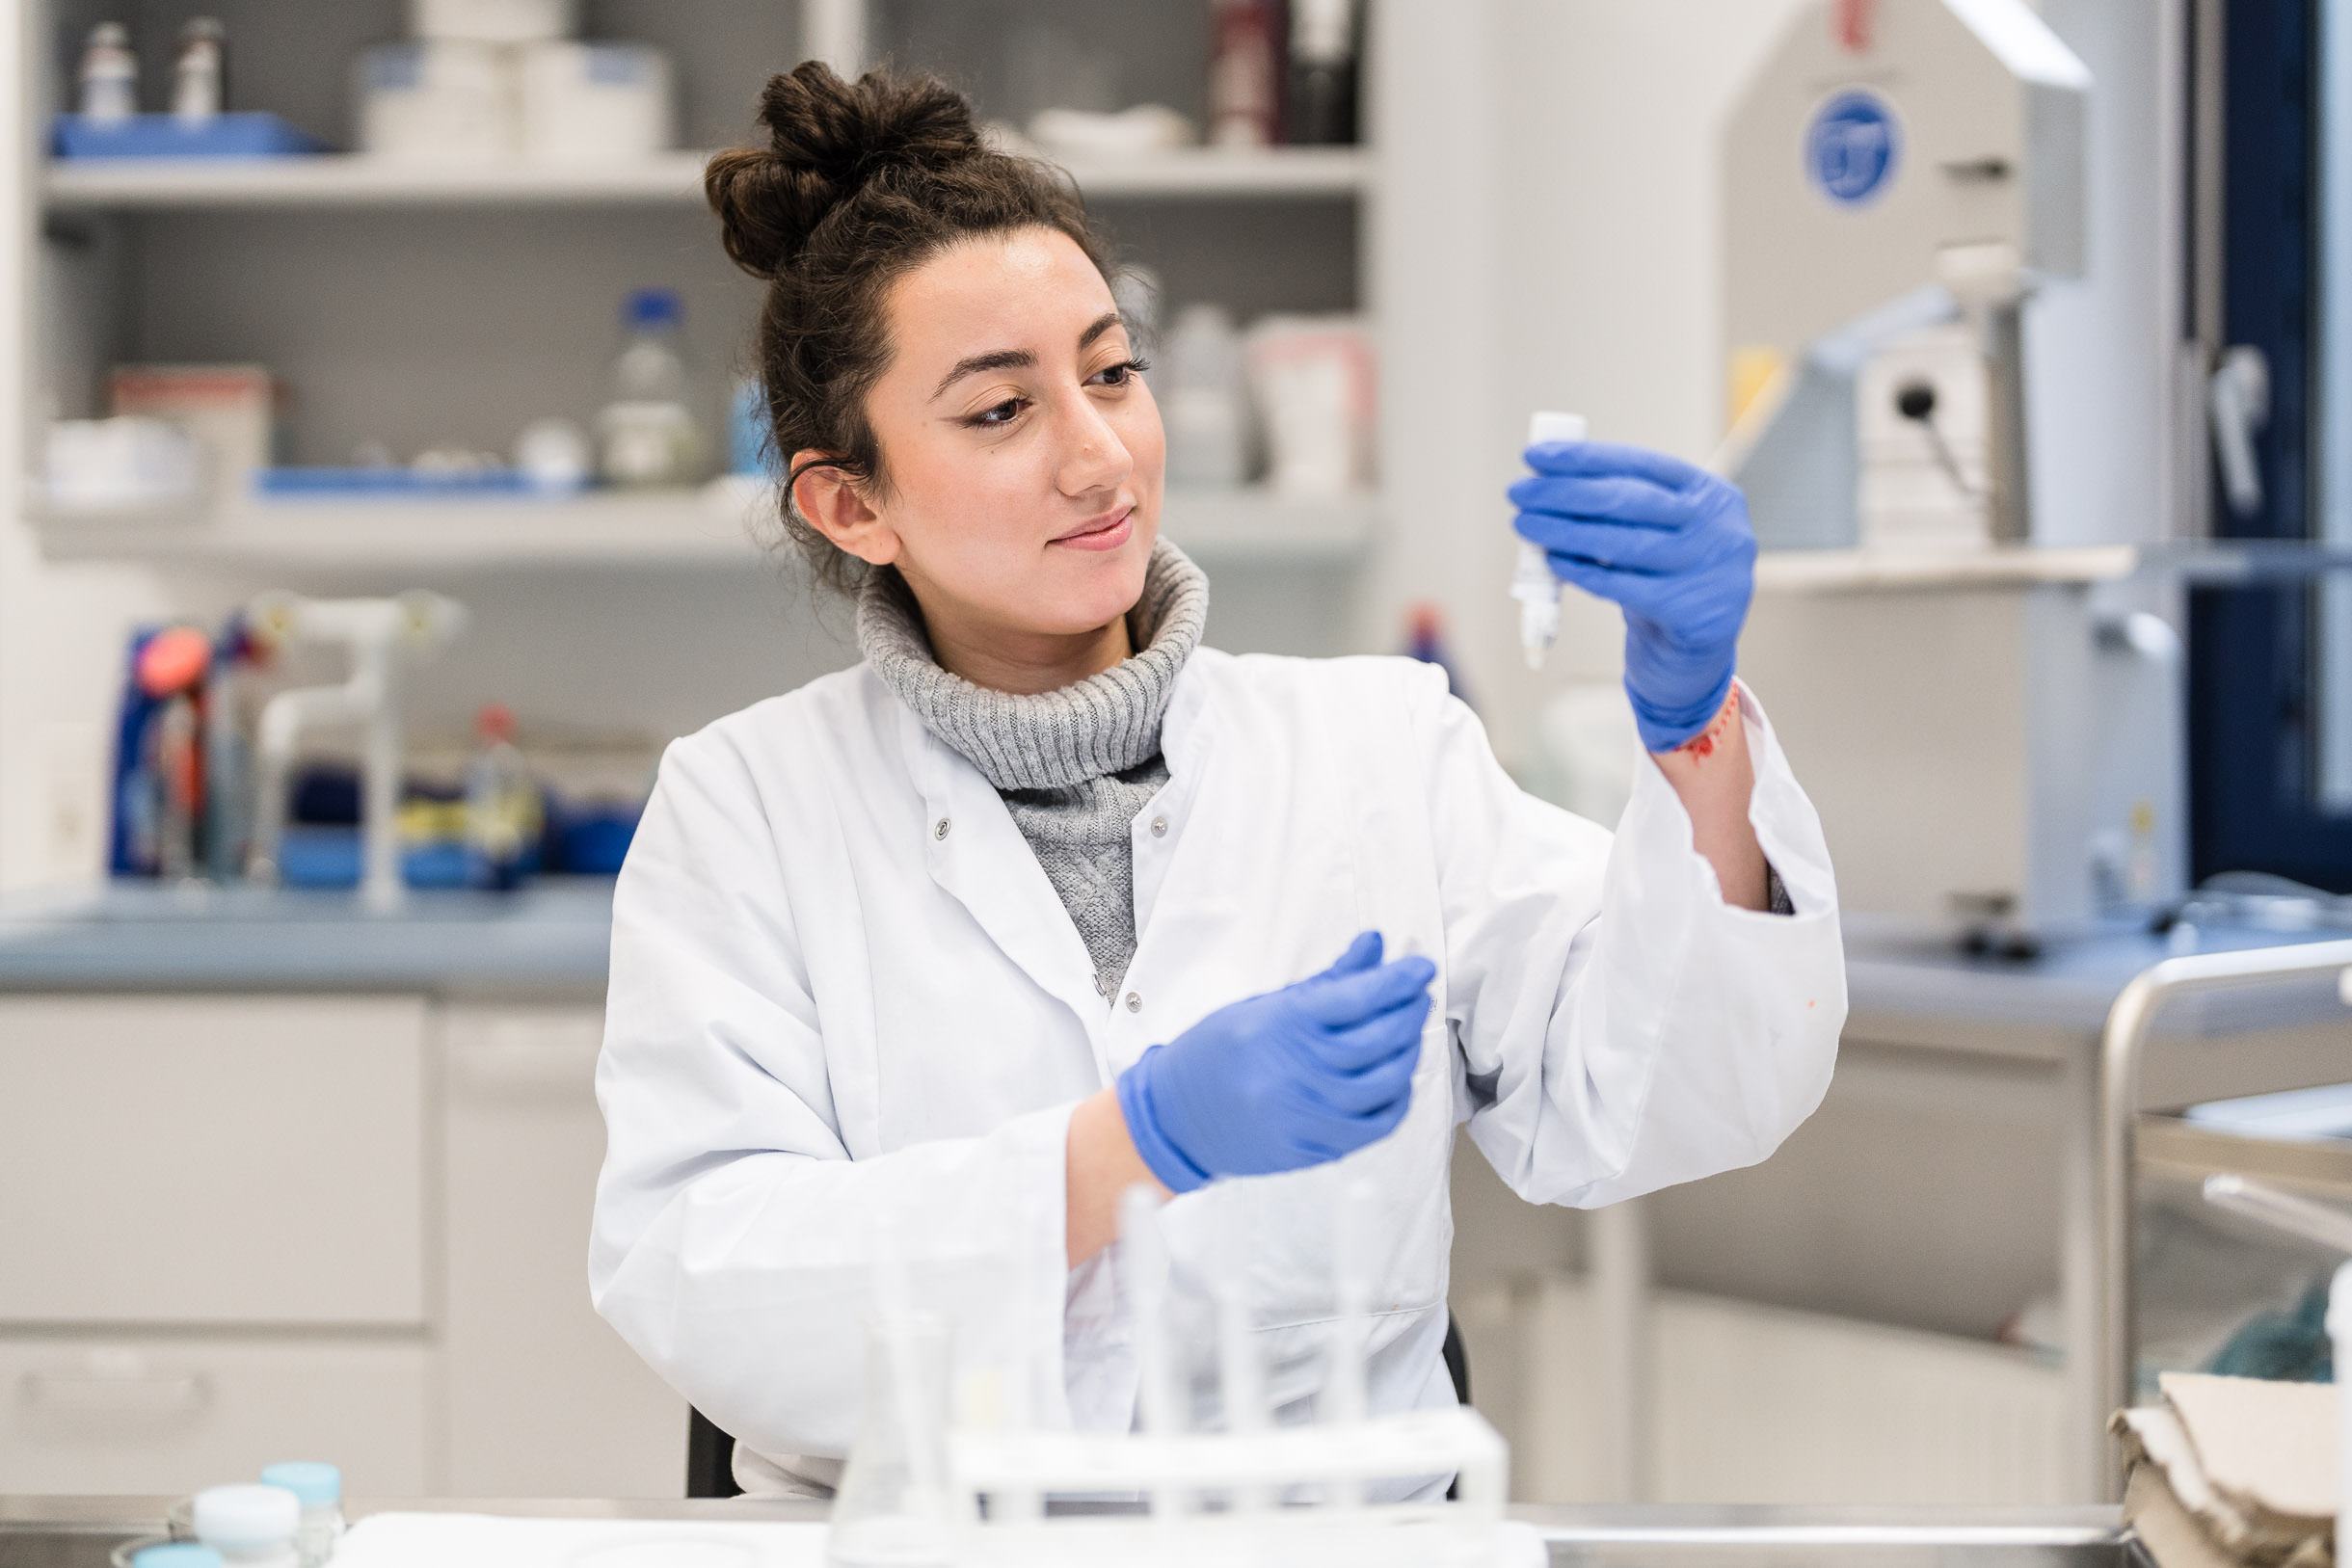 Businessfotos im Labor der Pathologie in Paderborn, eine Mitarbeiterin begutachtet eine Pipette mit Flüssigkeit im Unternehmen.